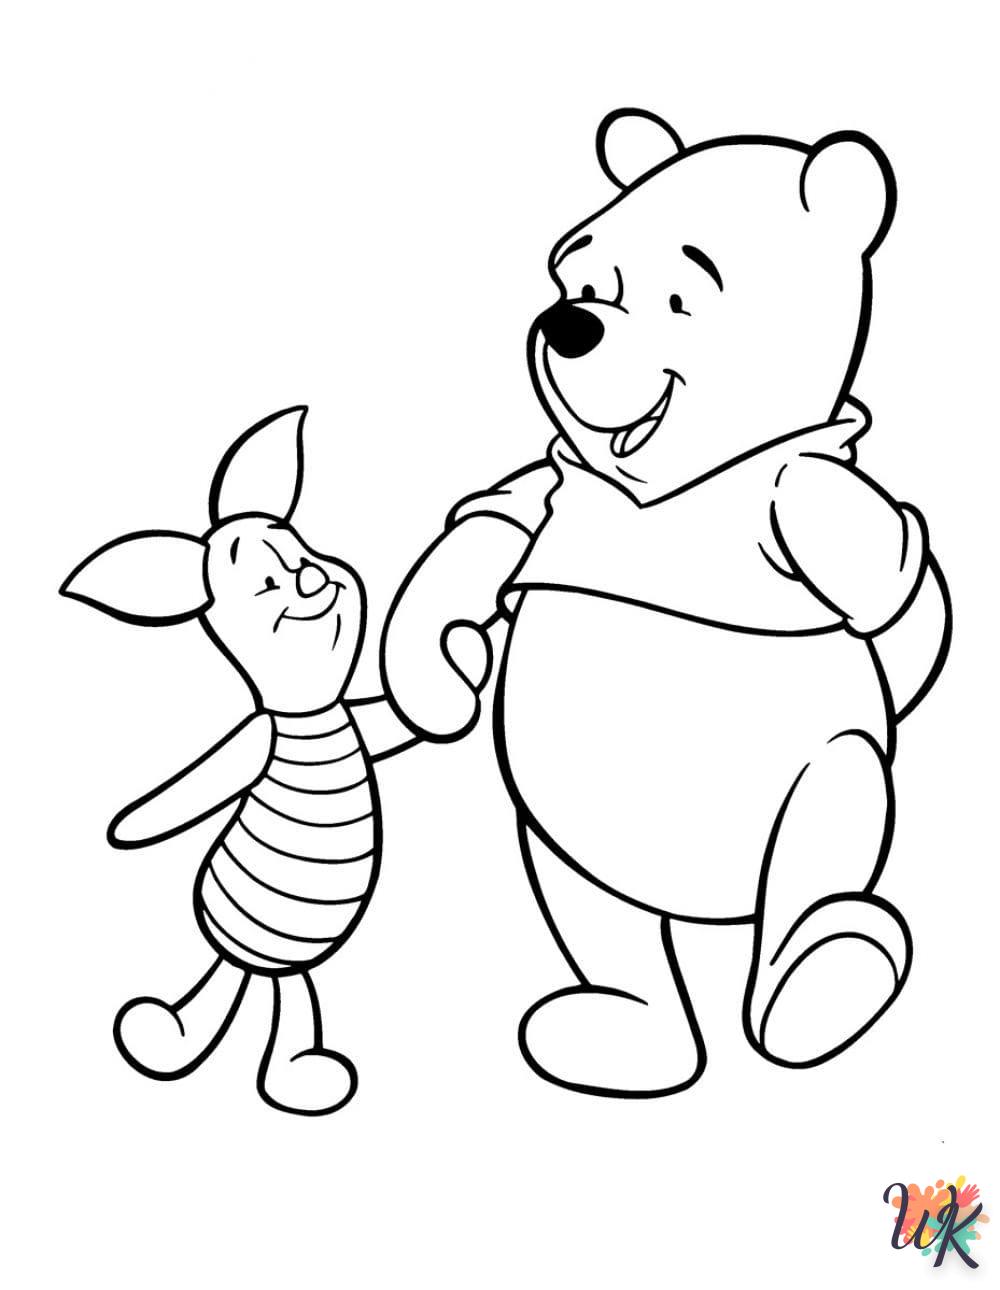 Disegni da Colorare Winnie the Pooh 33